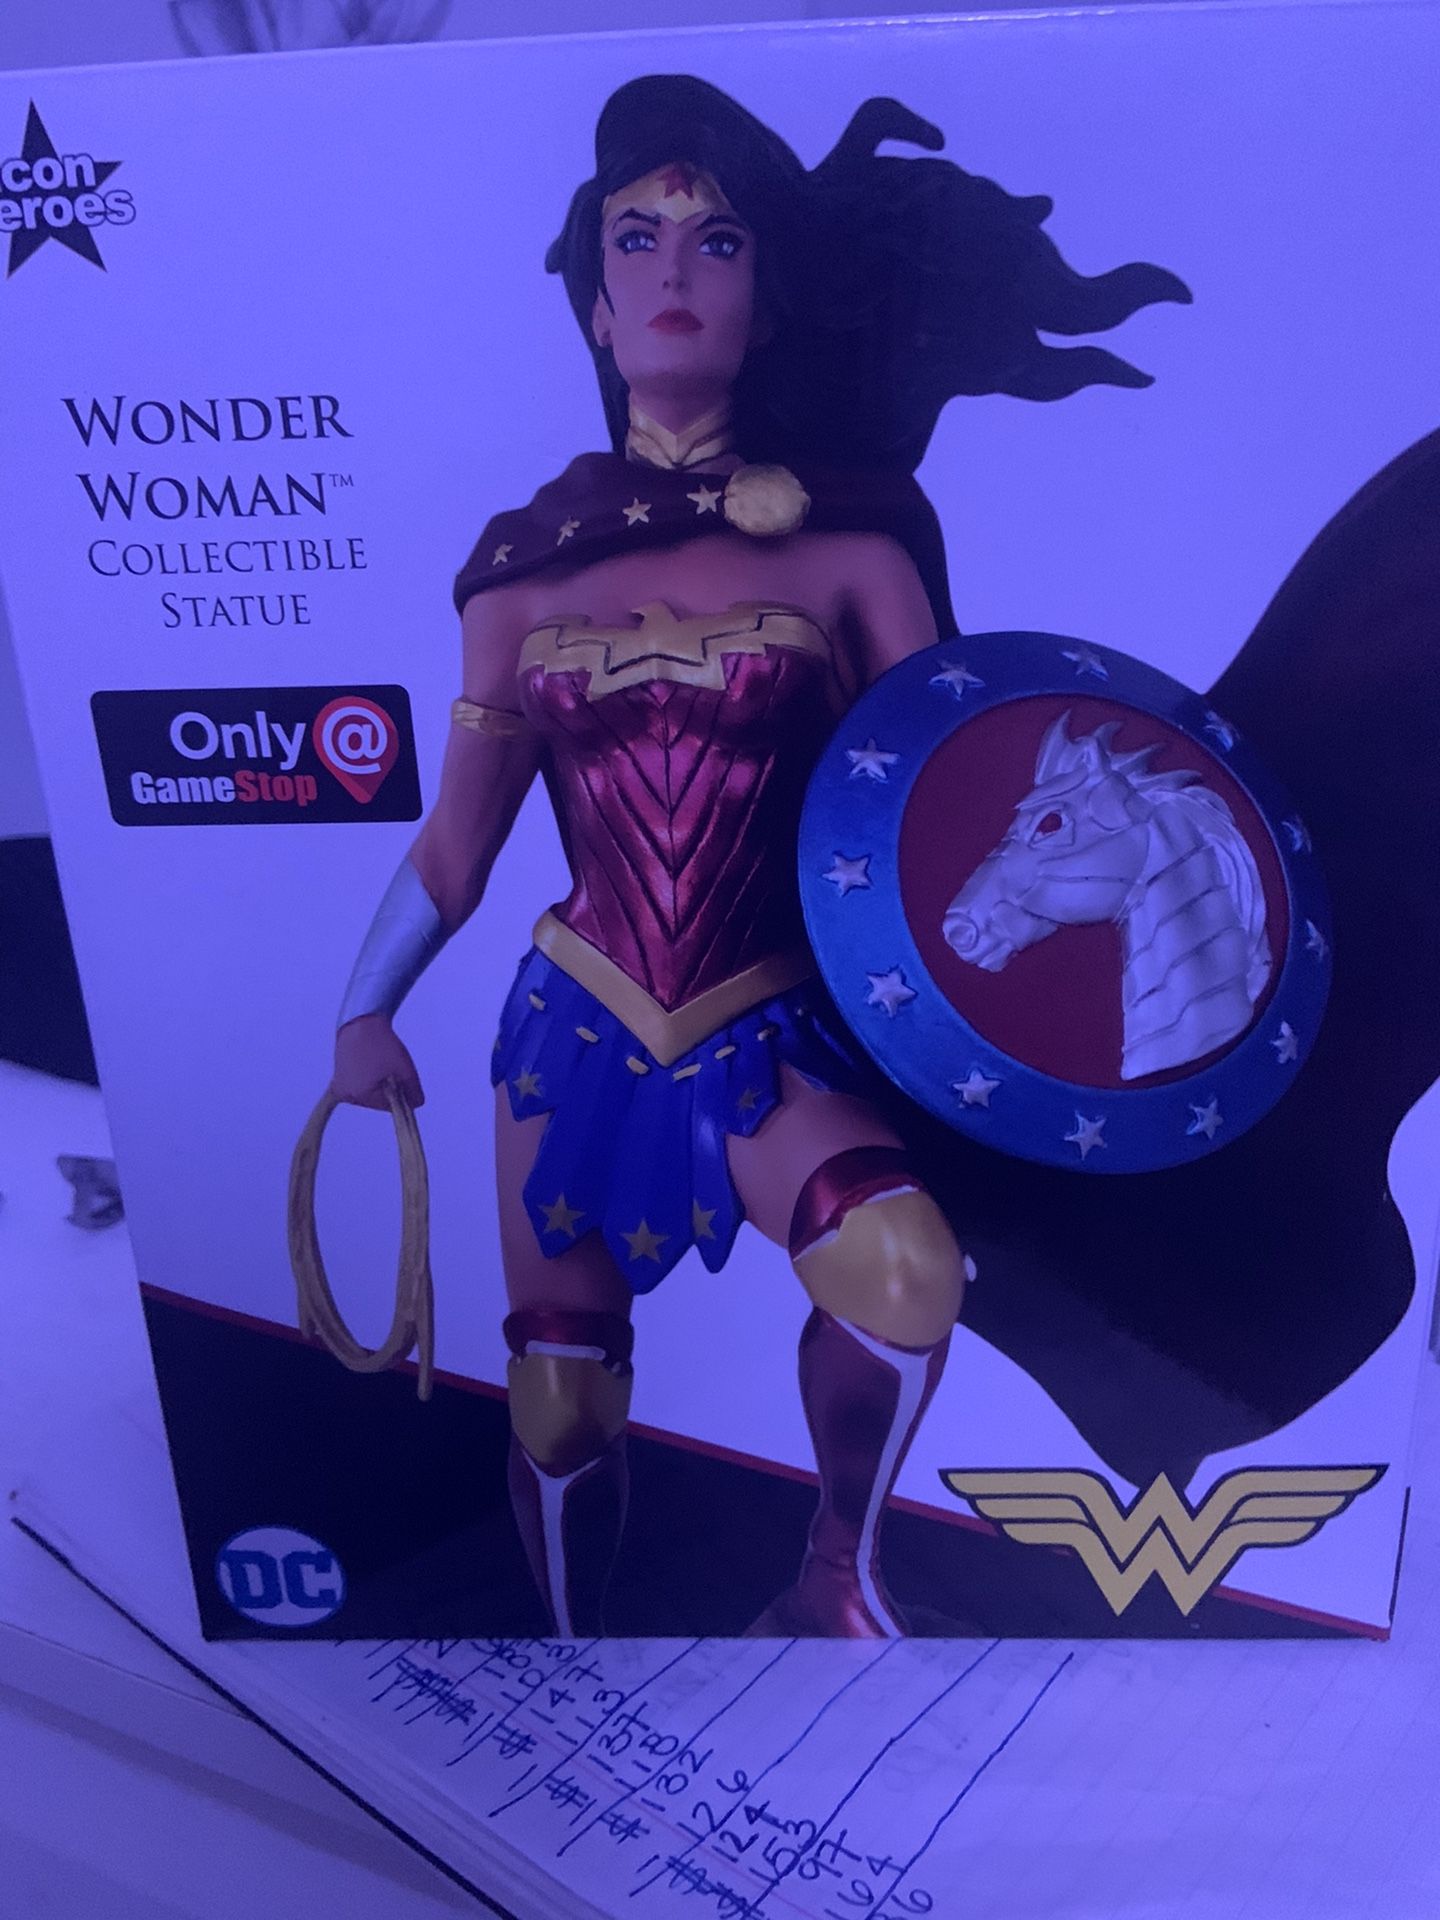 Wonder Women Collectible statue